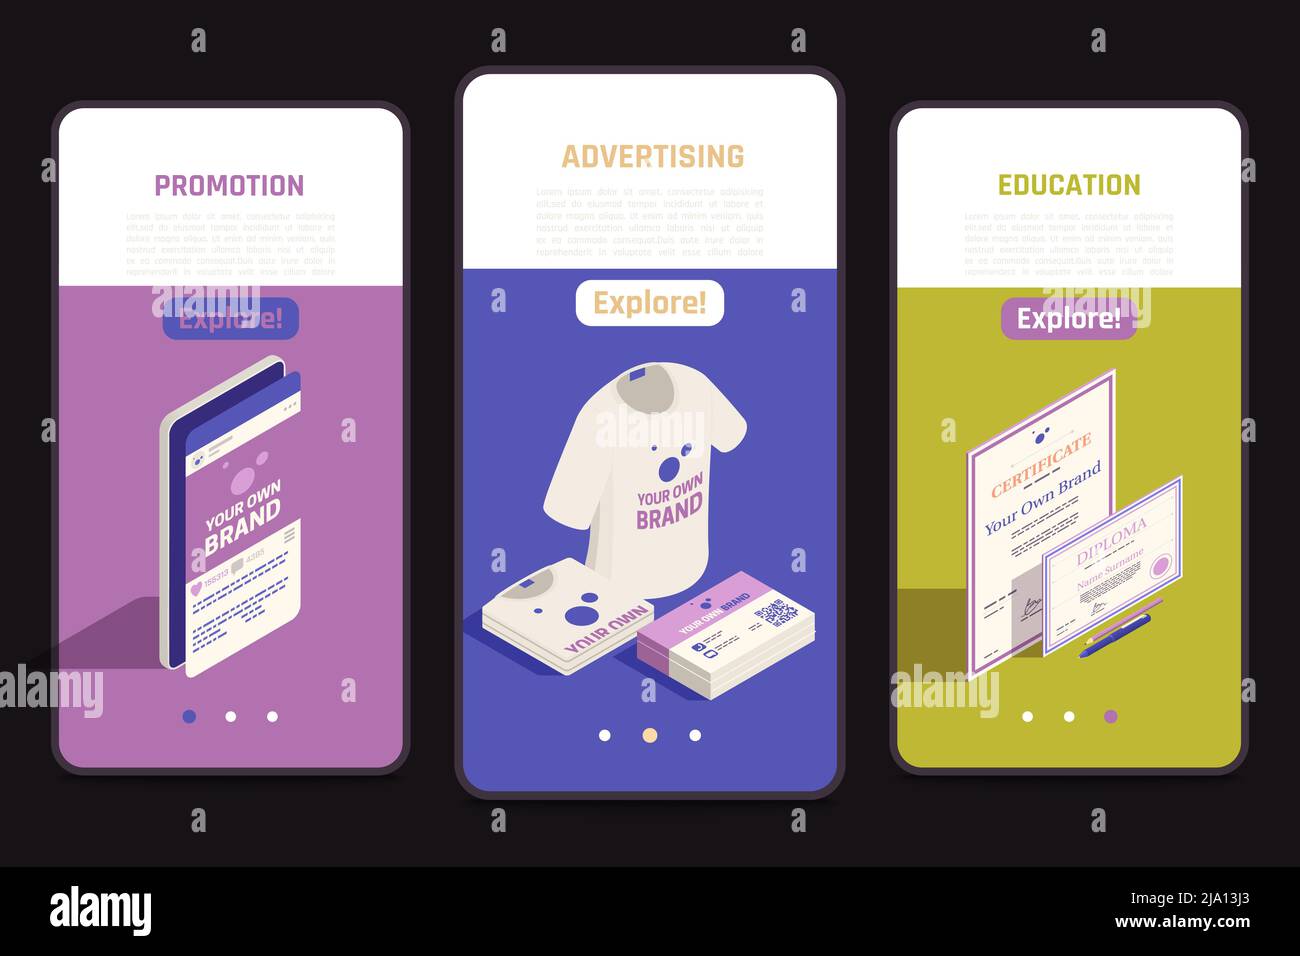 Auto-promotion stratégies de marque isométriques écrans mobiles ensemble avec éducation marketing diplôme image vectorielle d'identité d'entreprise Illustration de Vecteur